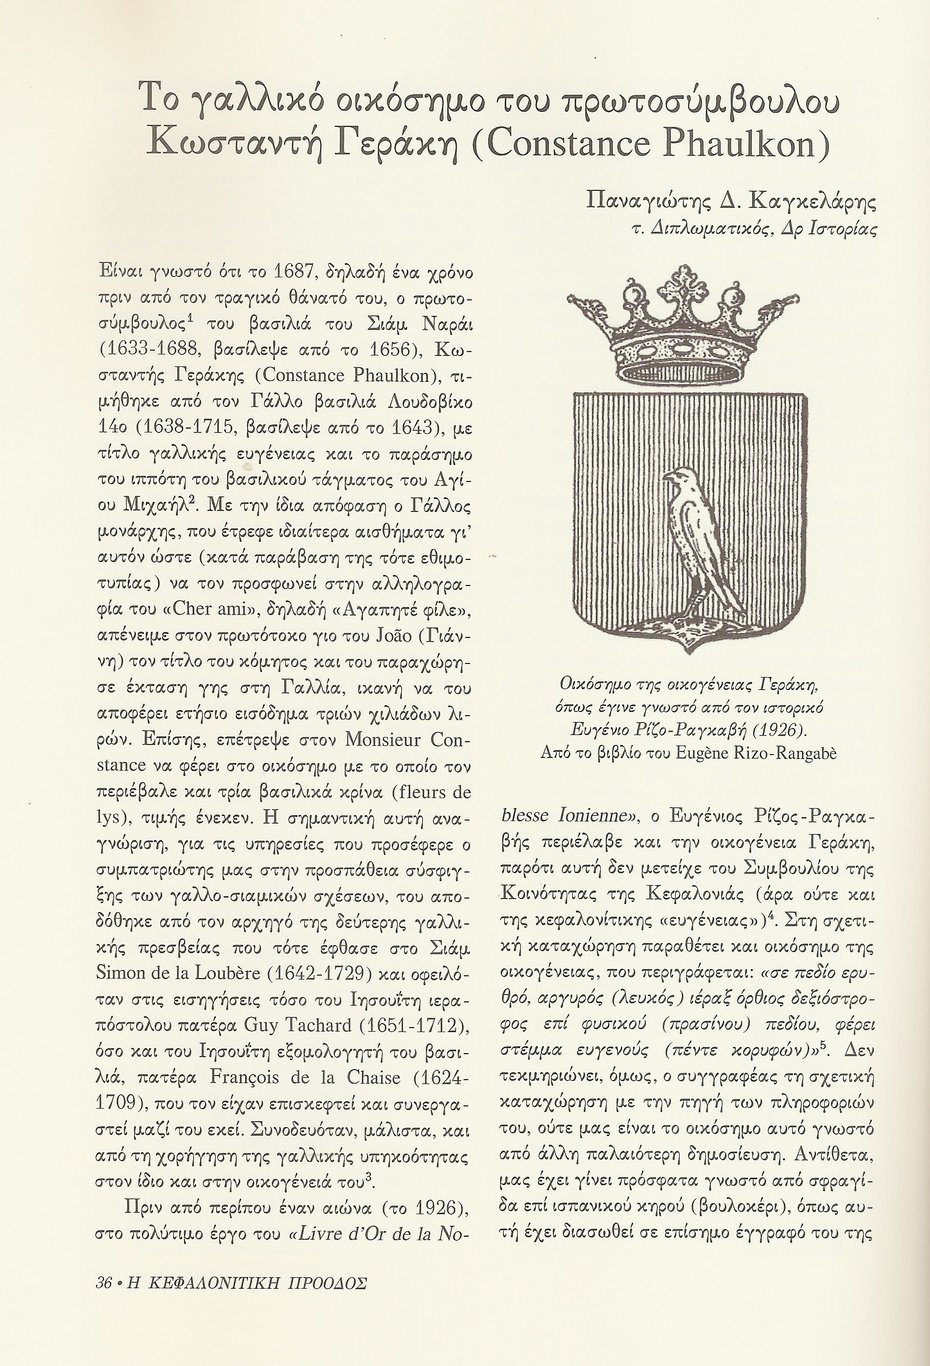 Γαλλικό Οικόσημο Κωσταντή Γεράκη (Constance Phaulkon) , Κεφαλονίτικη Πρόοδος, Β-7, σελ. 36